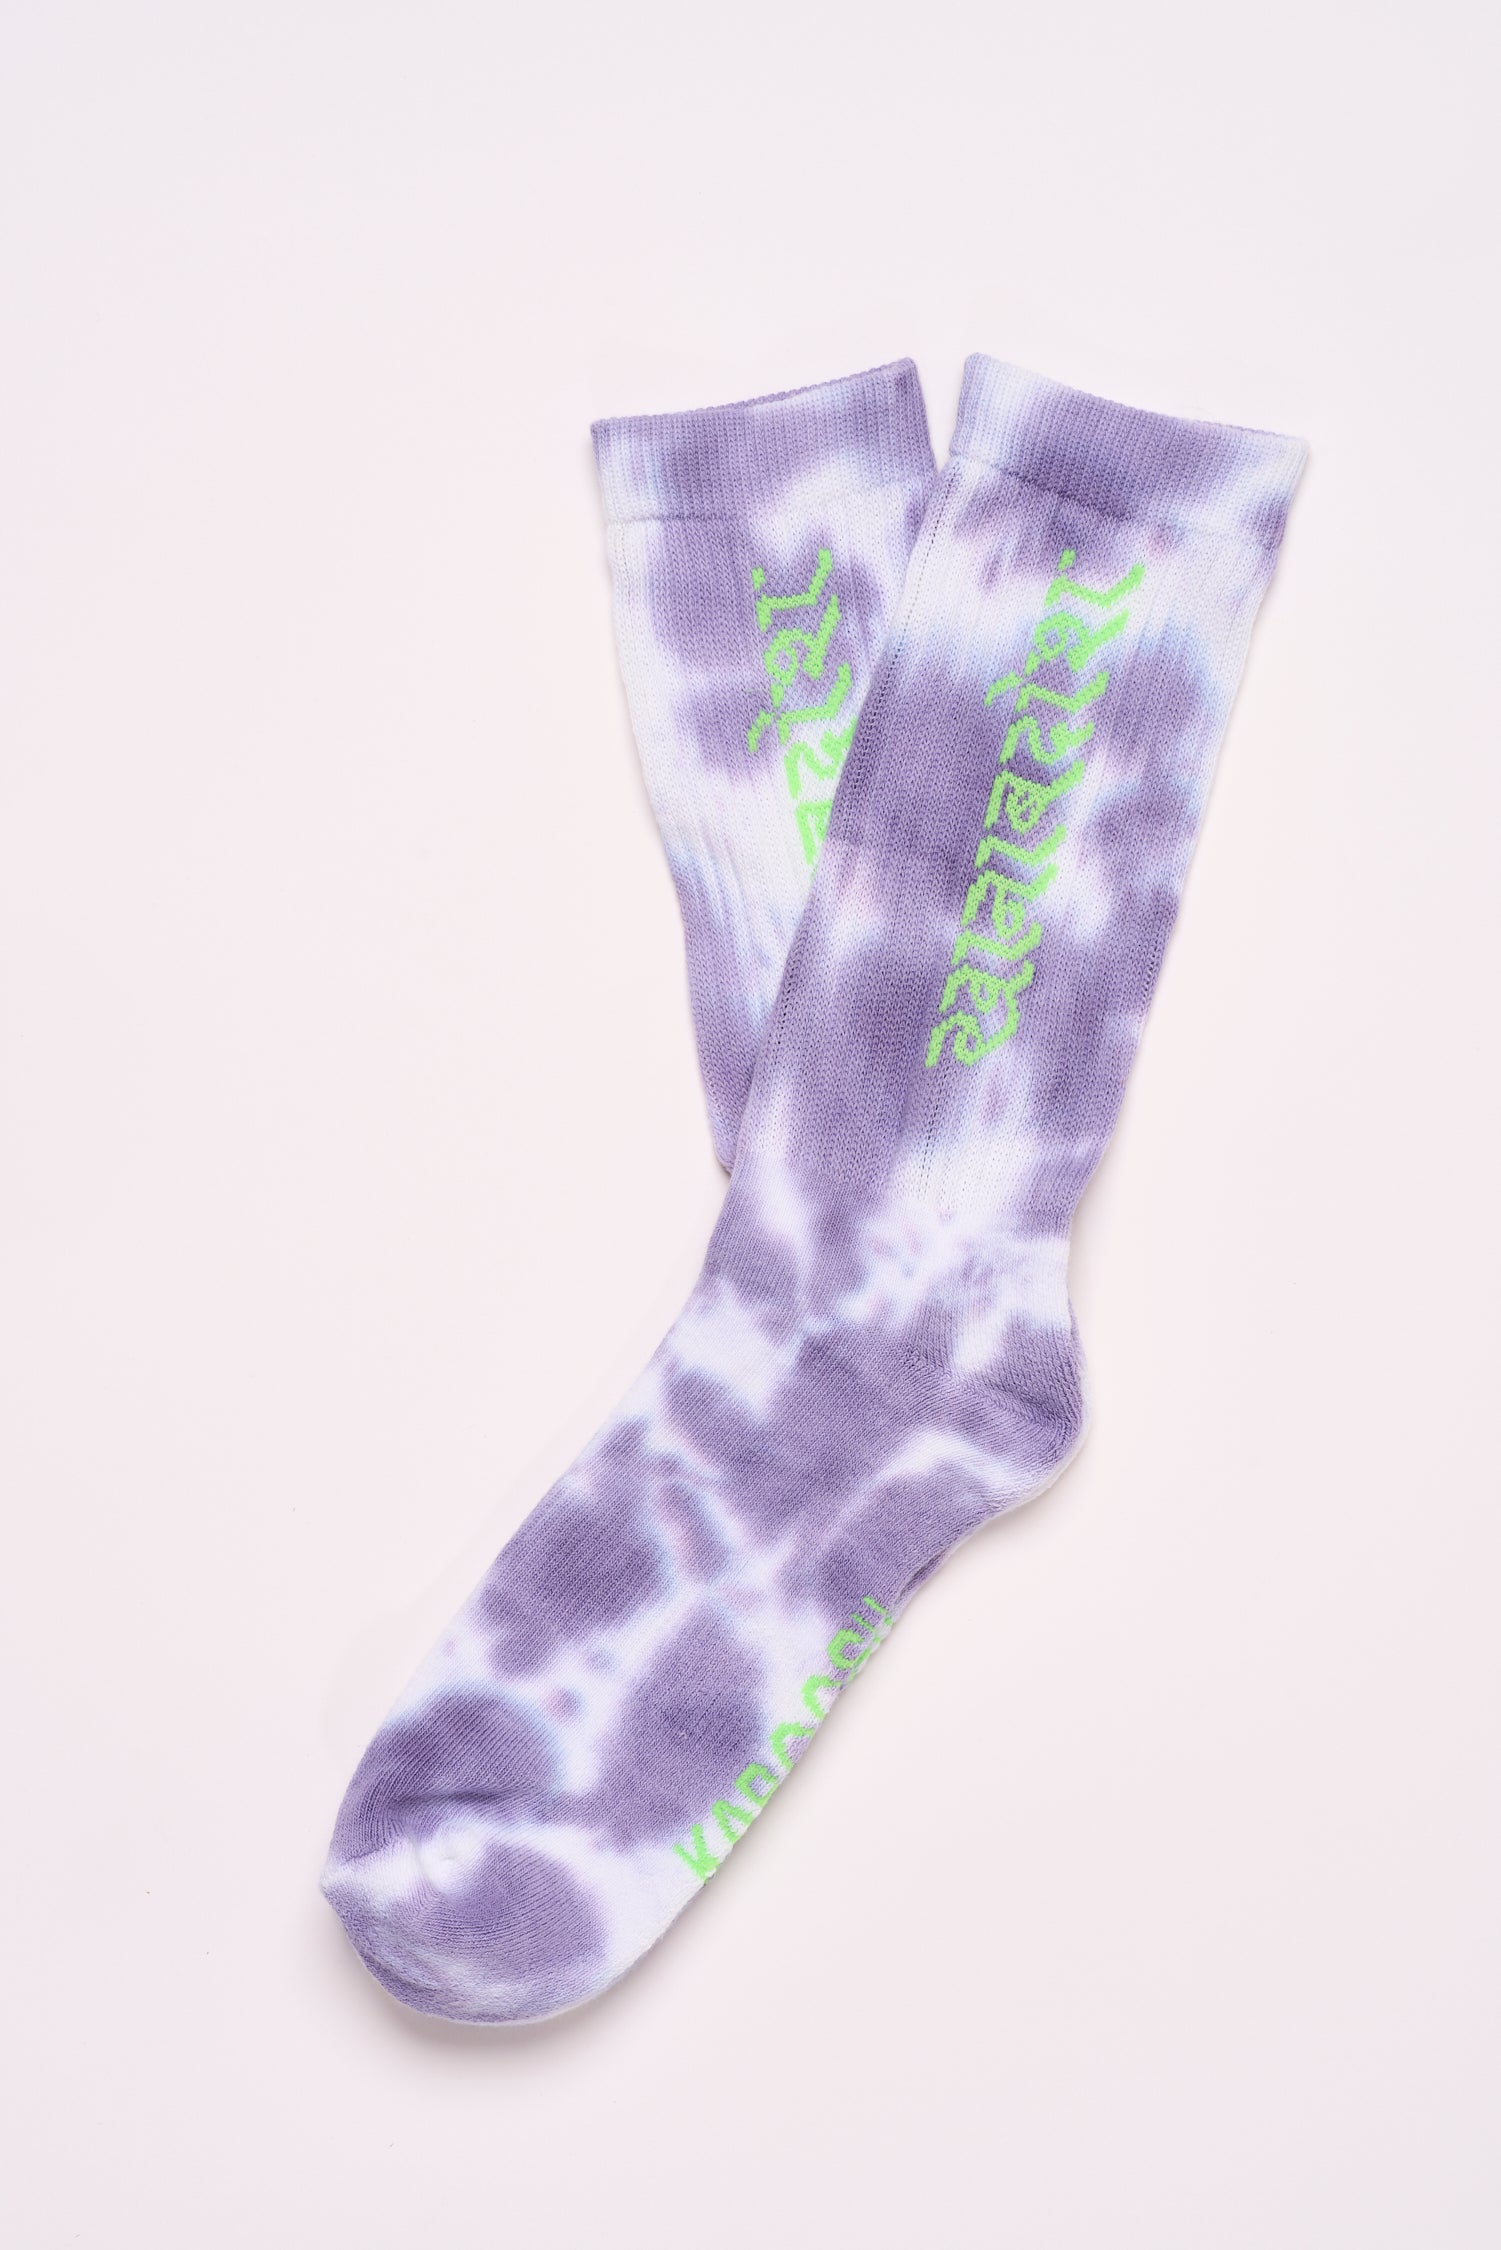 Socks - Hindi - Purple Tie dye - one size - Unisex